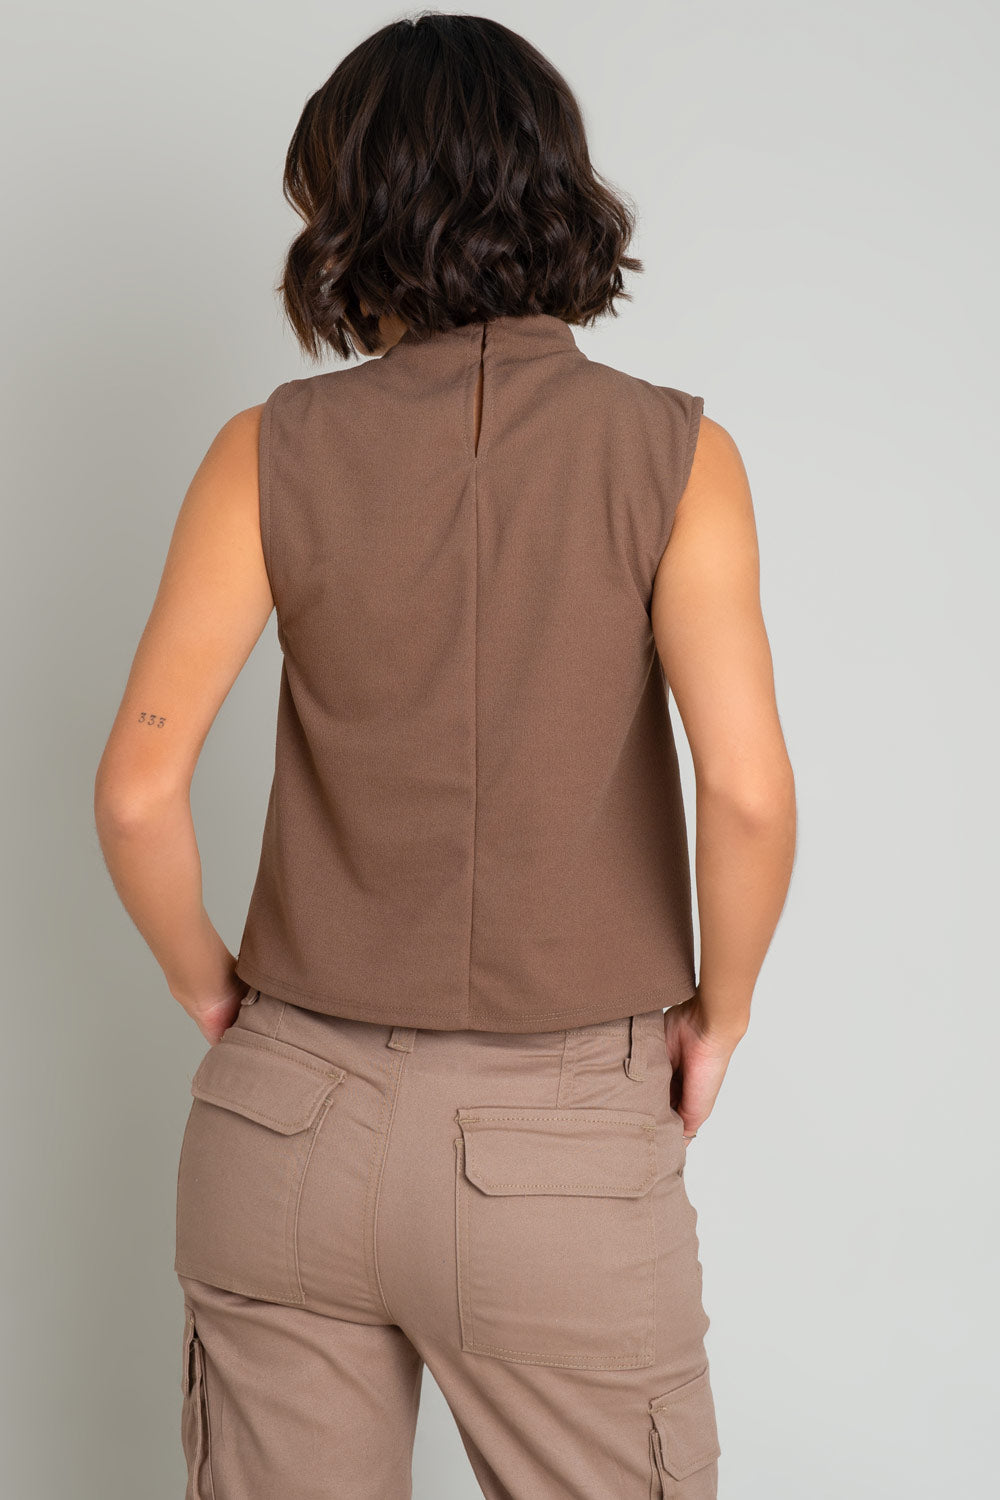 Blusa sin mangas de fit recto, cuello mock con detalles plisados y cierre posterior con botón y ojal